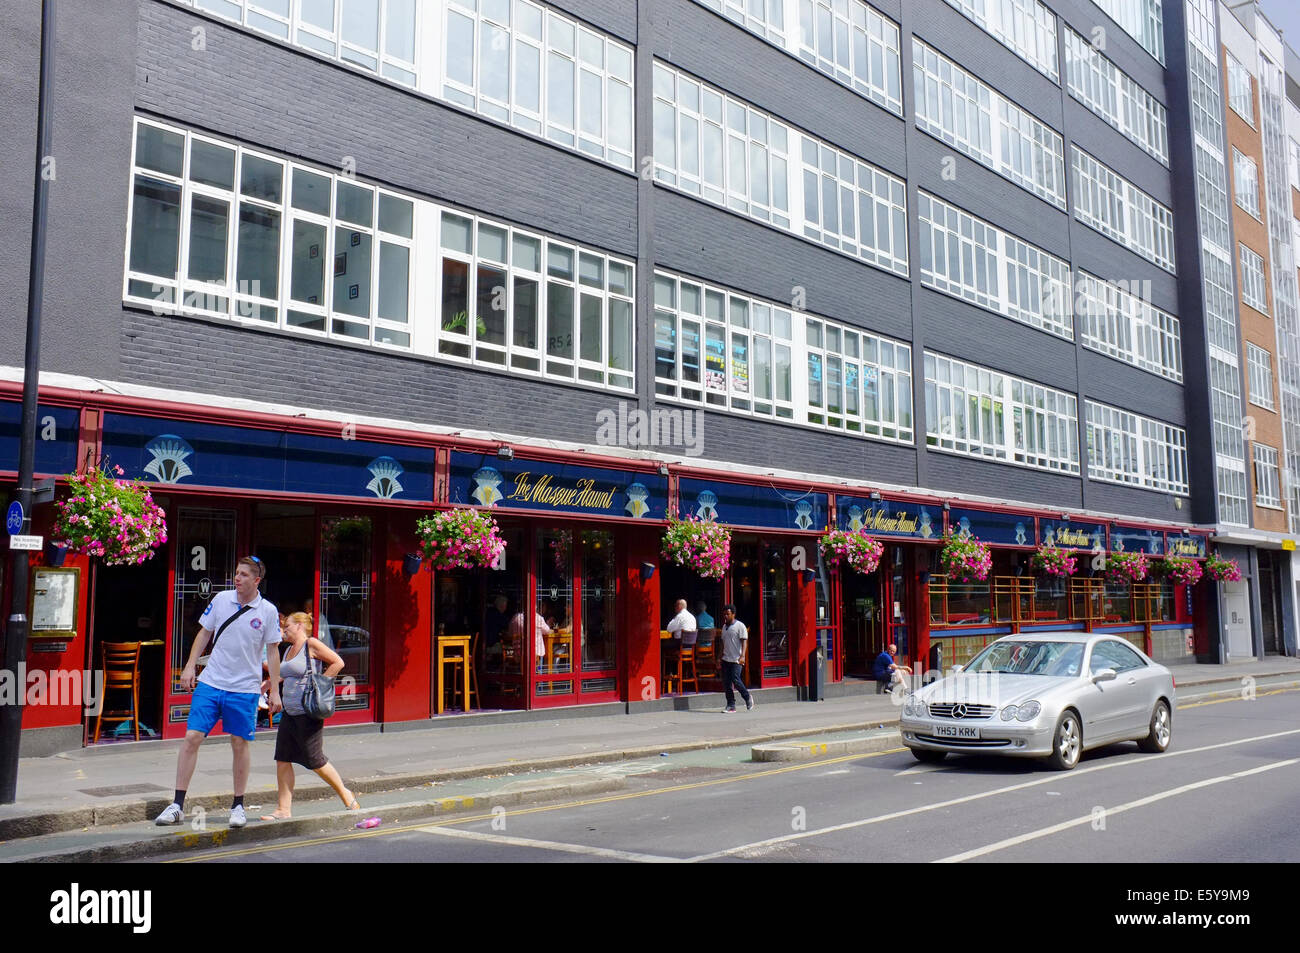 The Masque Haunt pub in London Stock Photo